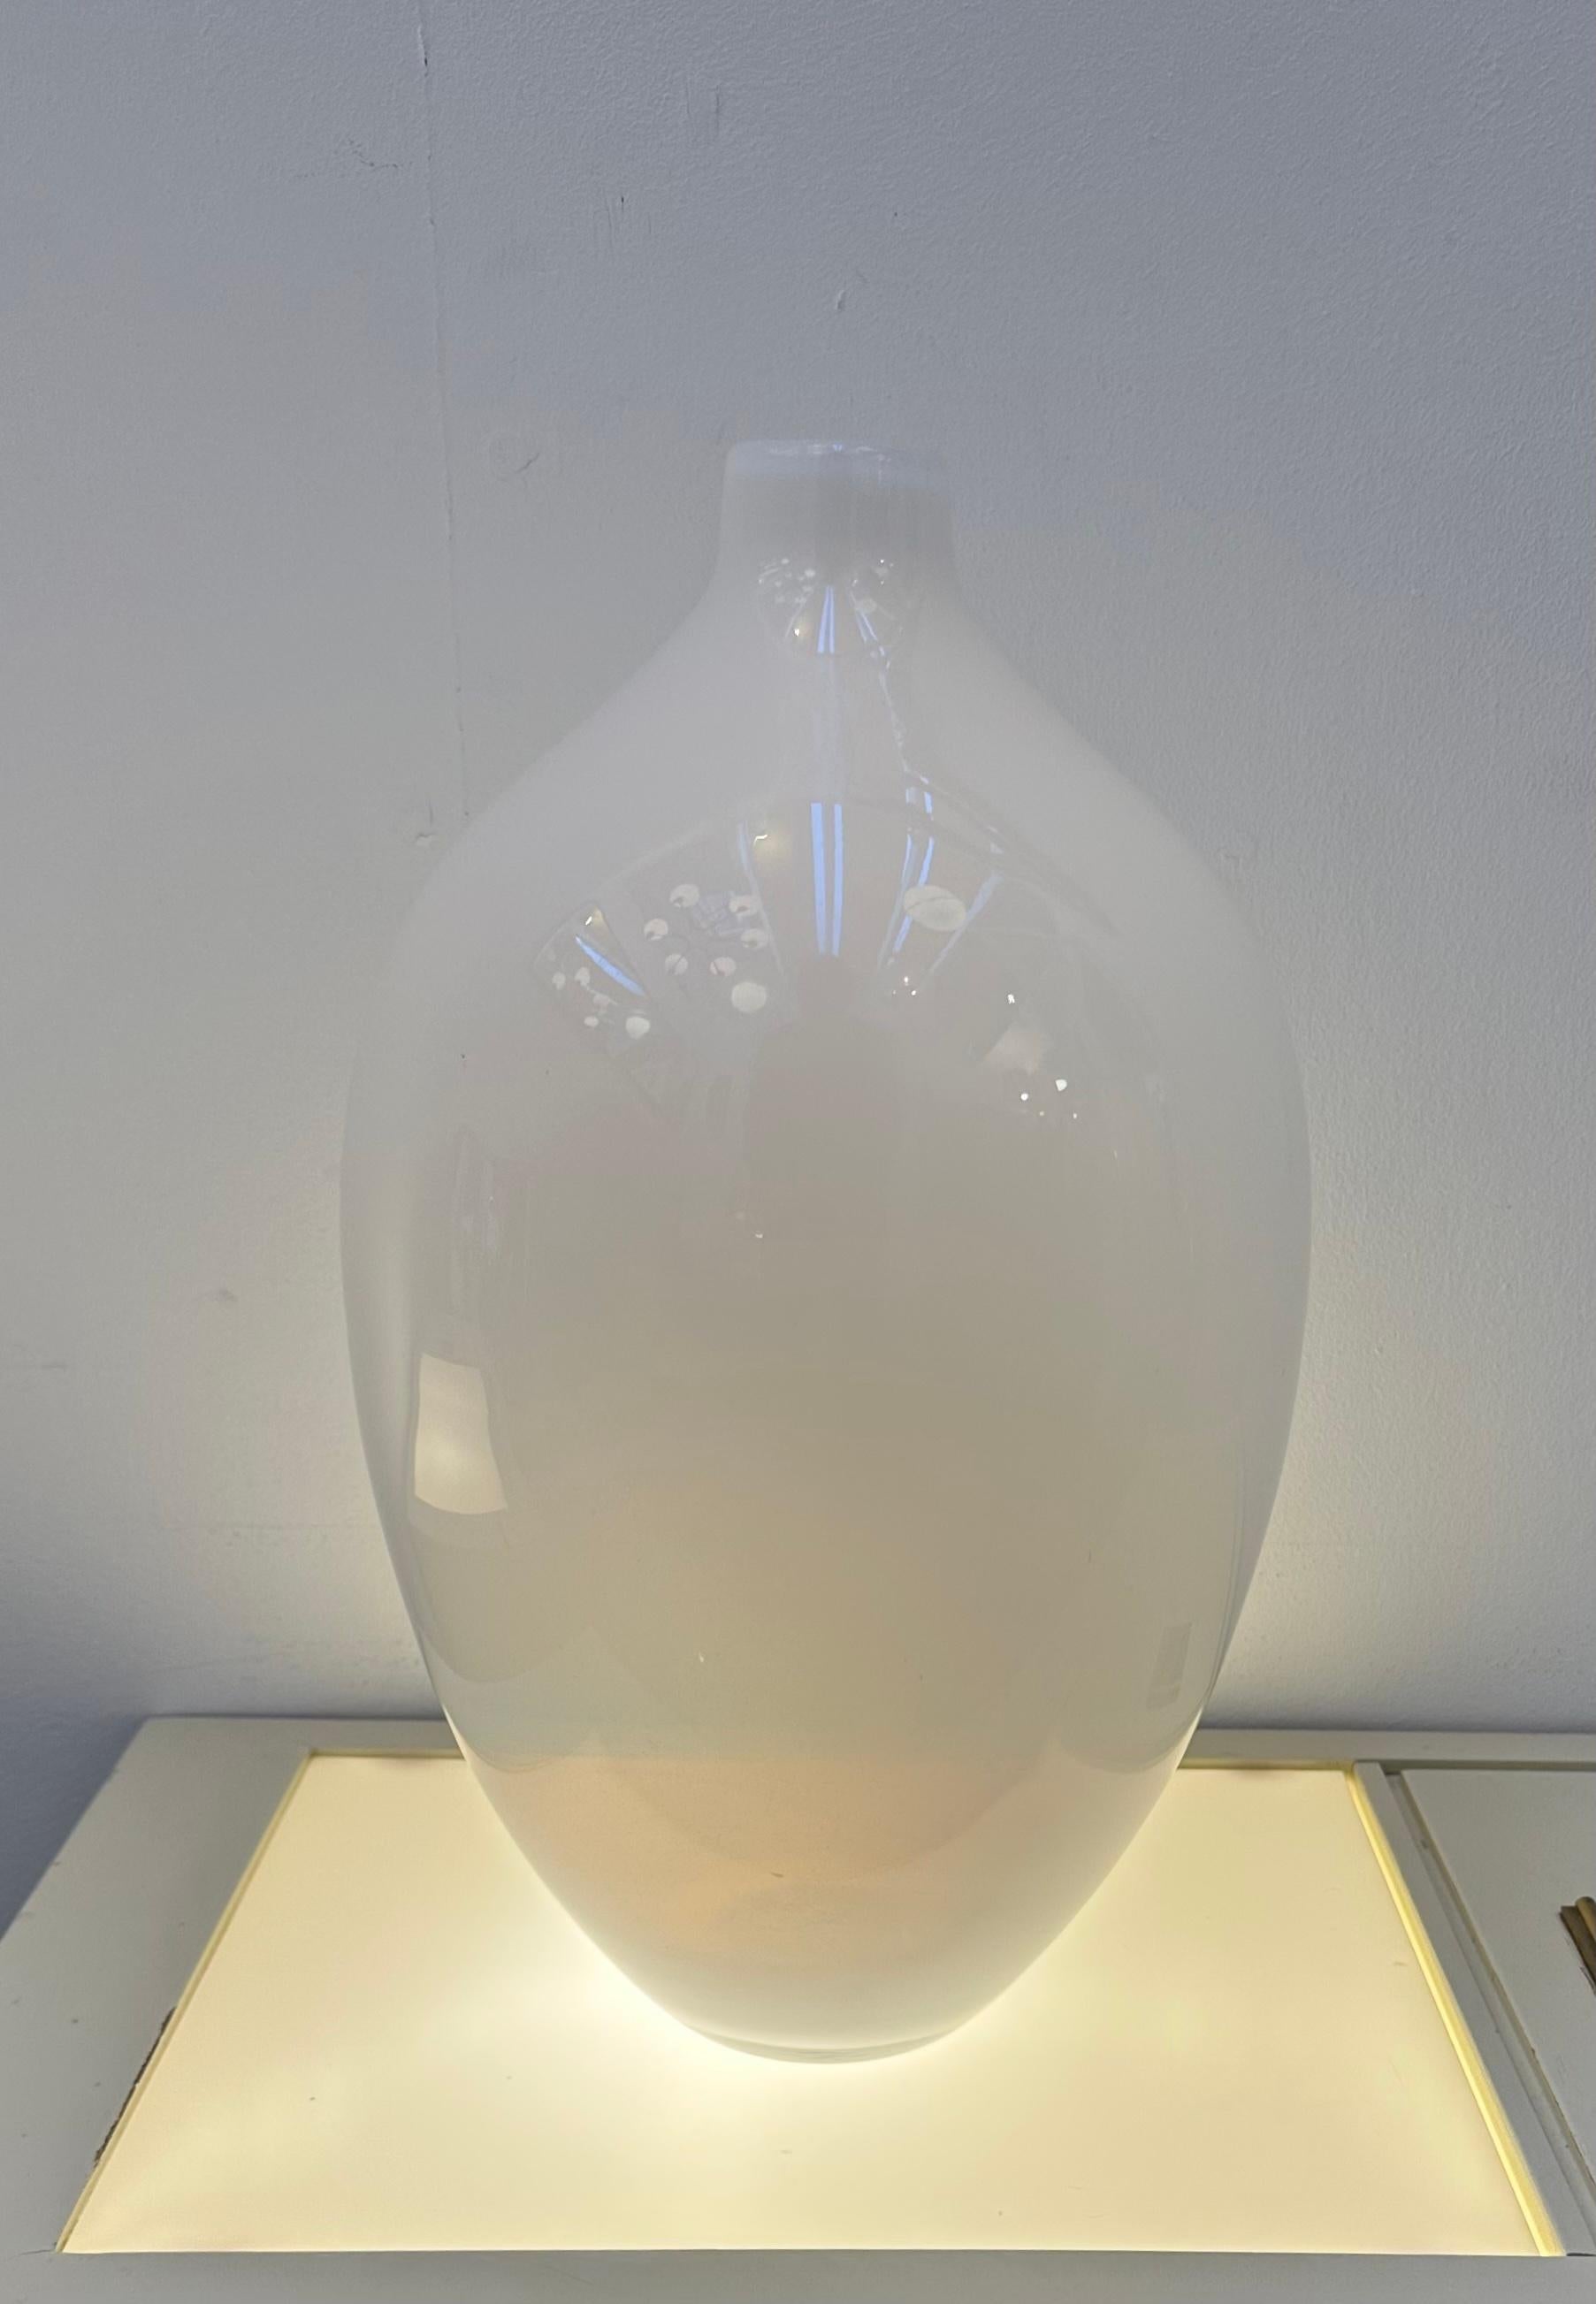 Vase bouteille en verre blanc opalescent laiteux vintage italien des années 1960 soufflé à la bouche de forme ovoïde. Un vase élégant, au design simple mais sophistiqué. Le vase est en verre blanc opalescent, ce qui lui confère un aspect doux et